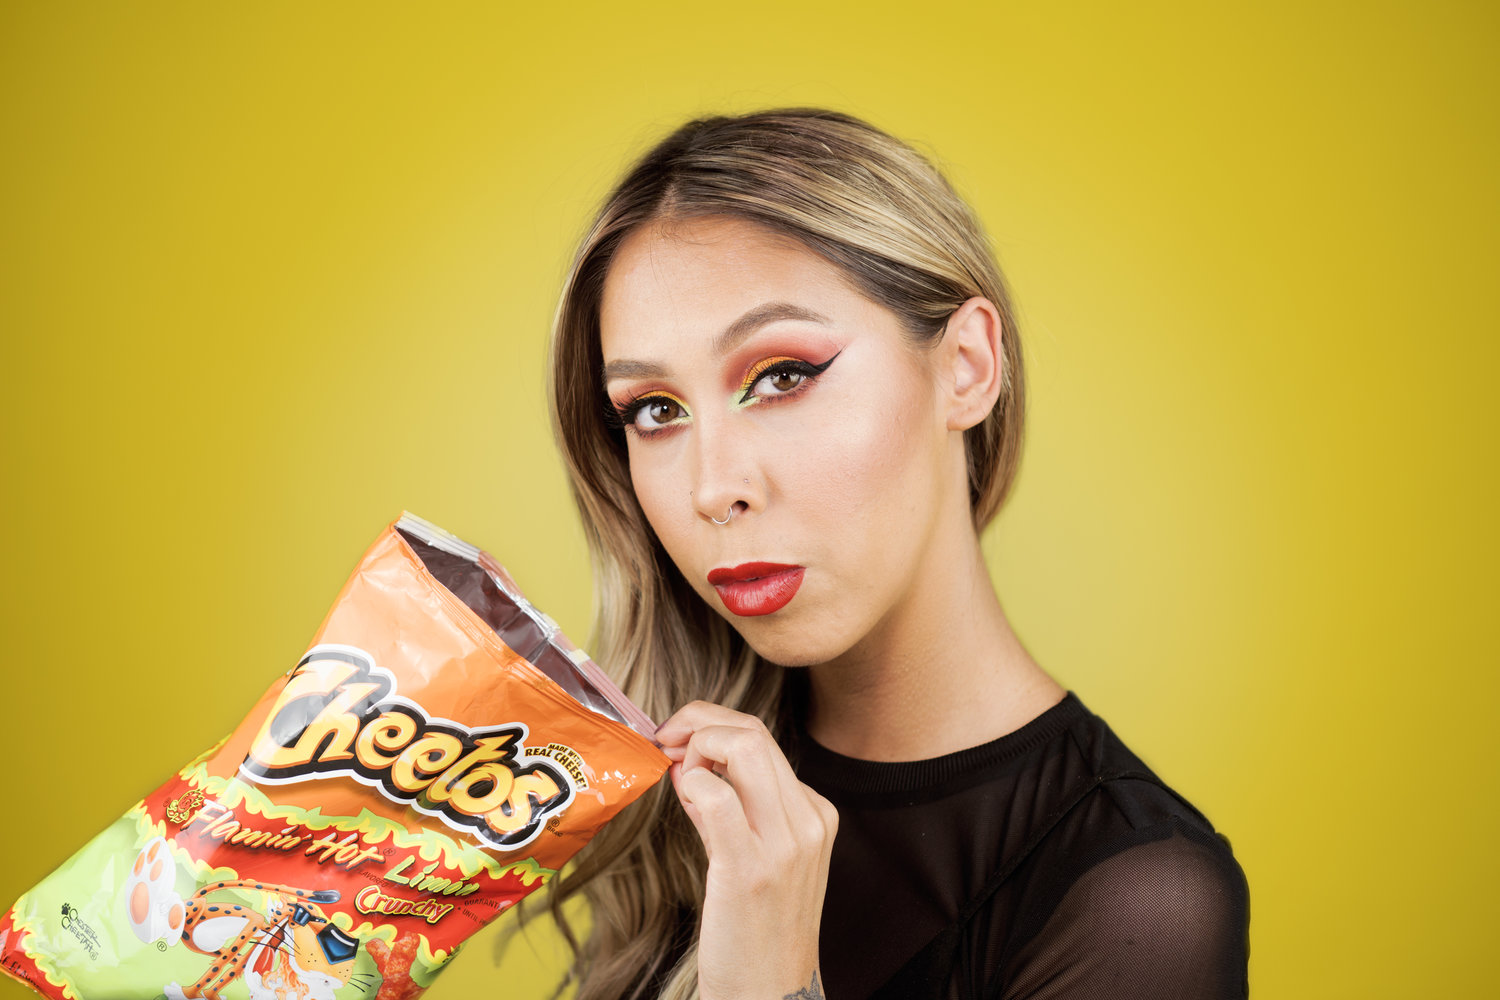 Hot Cheetos Make-up - makeup artistry by crystal Long.